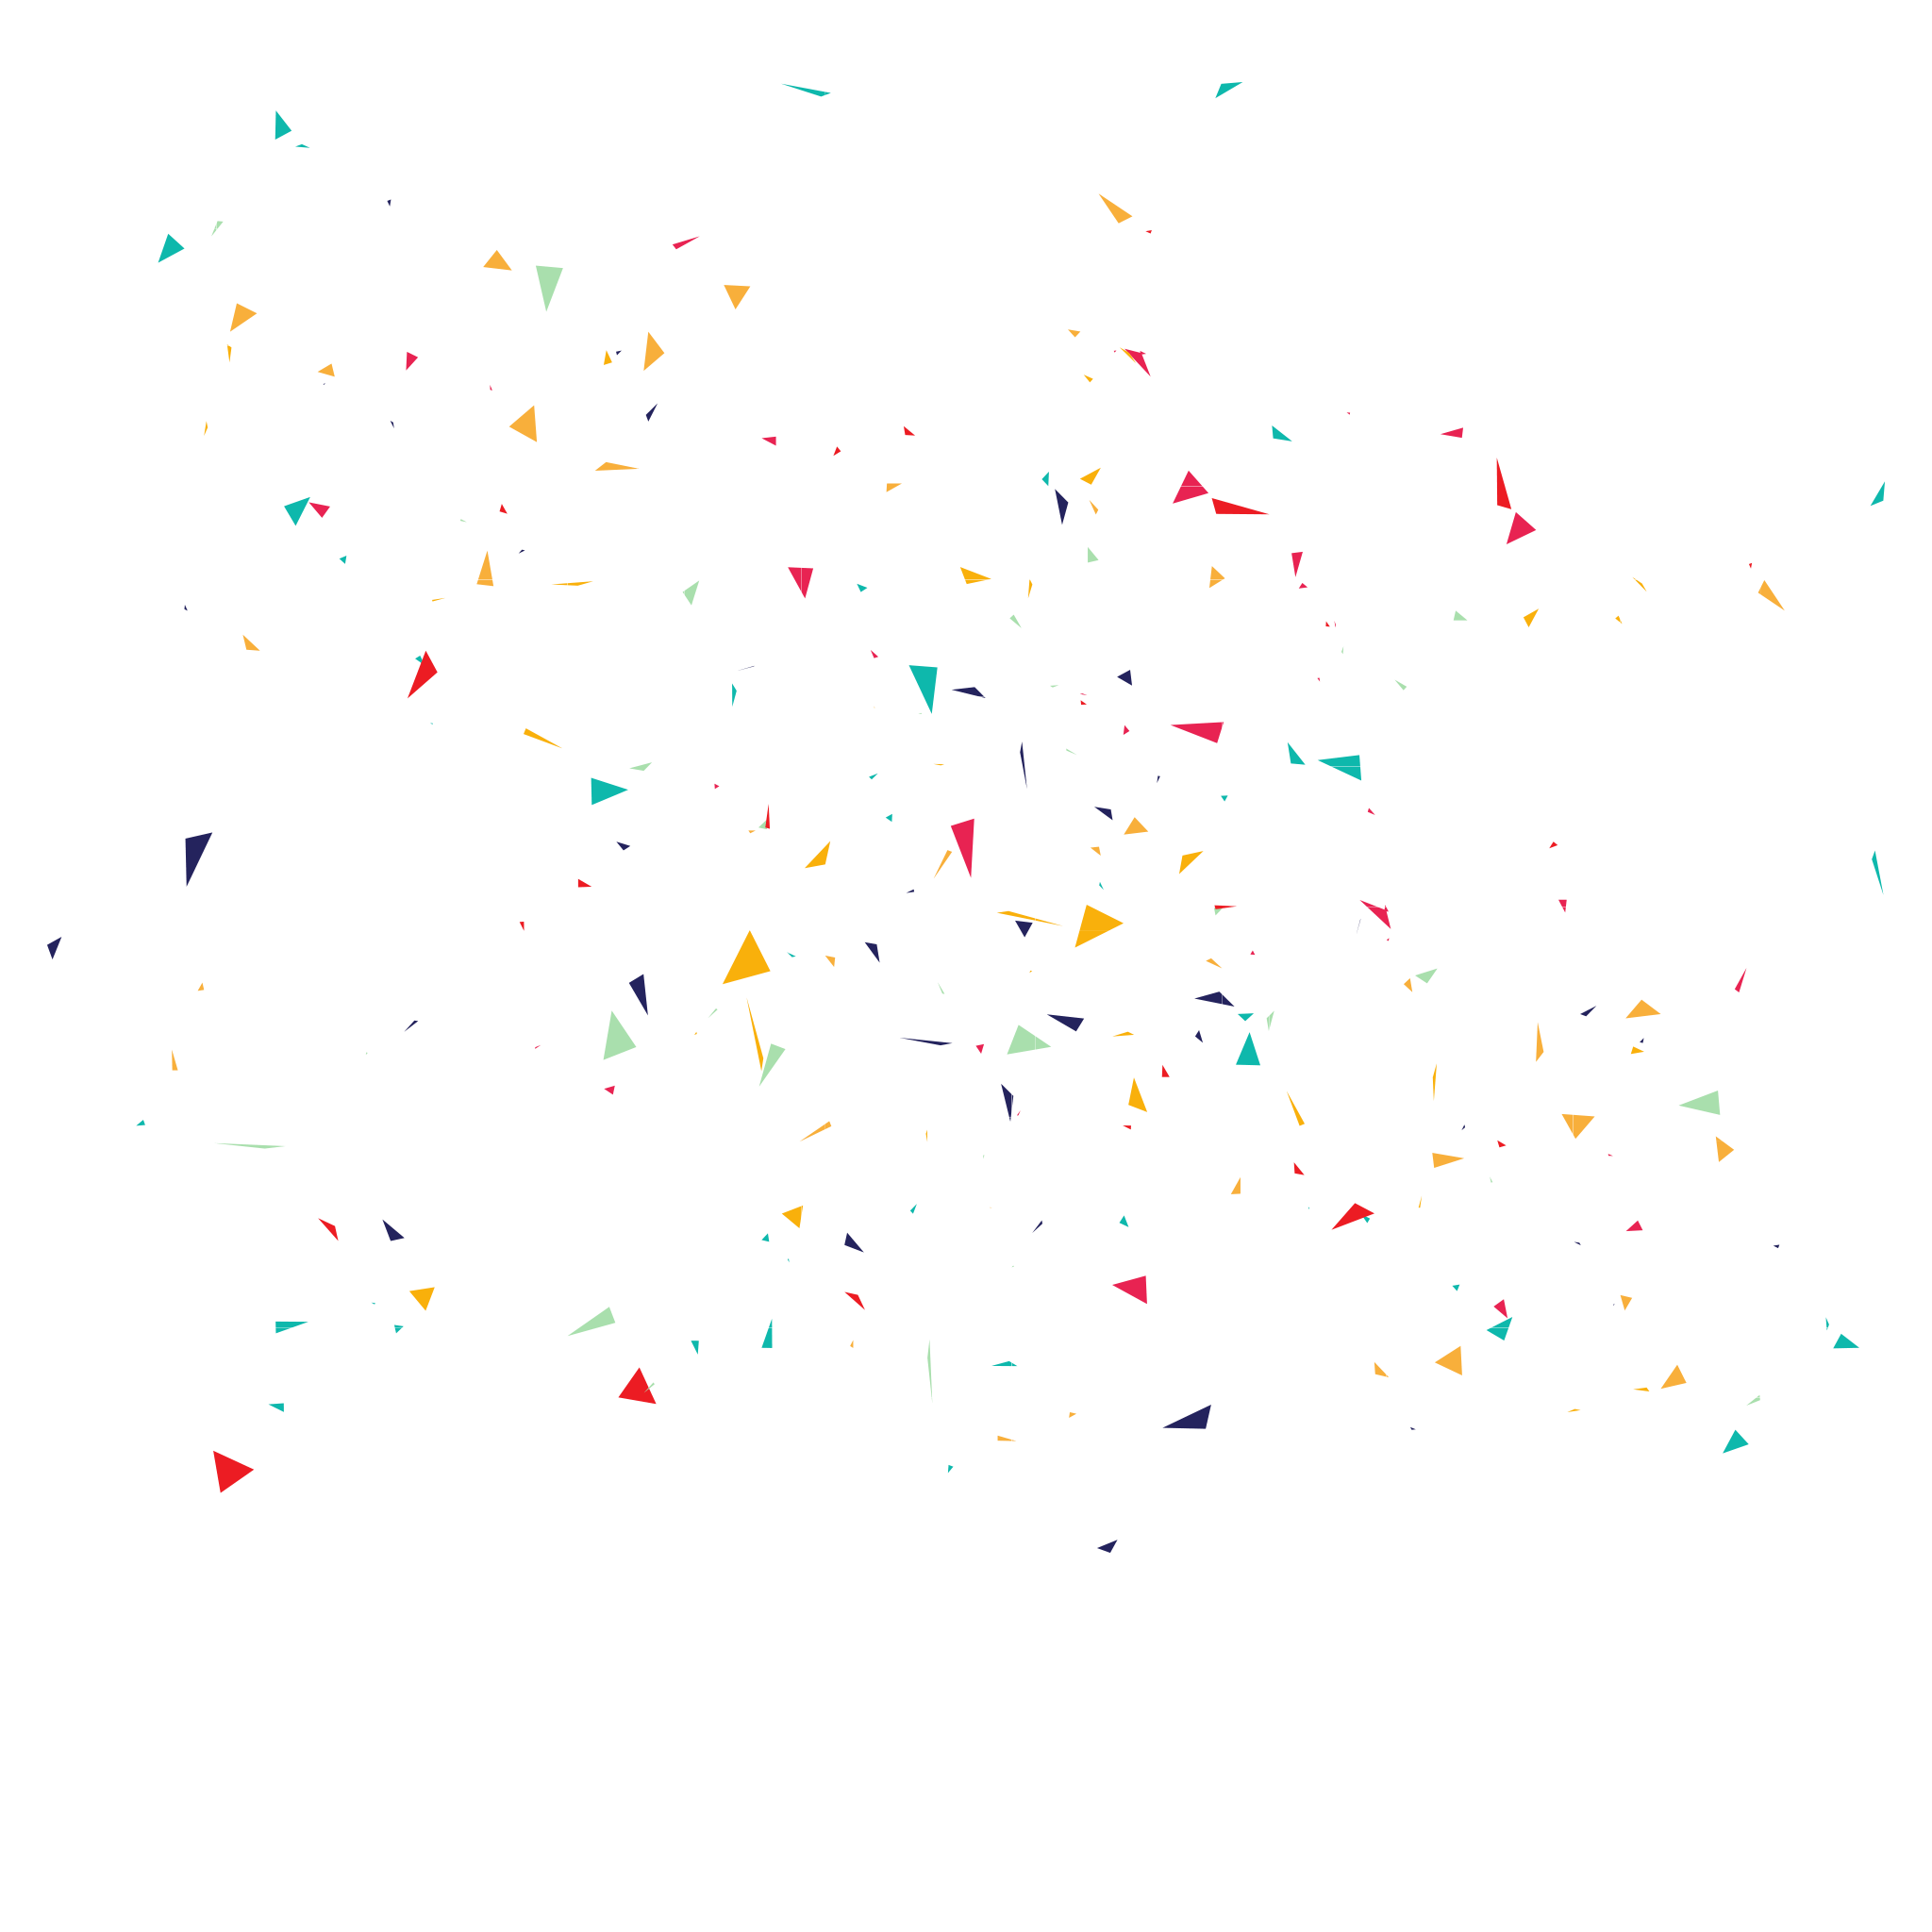 confetti confetti image download #8808